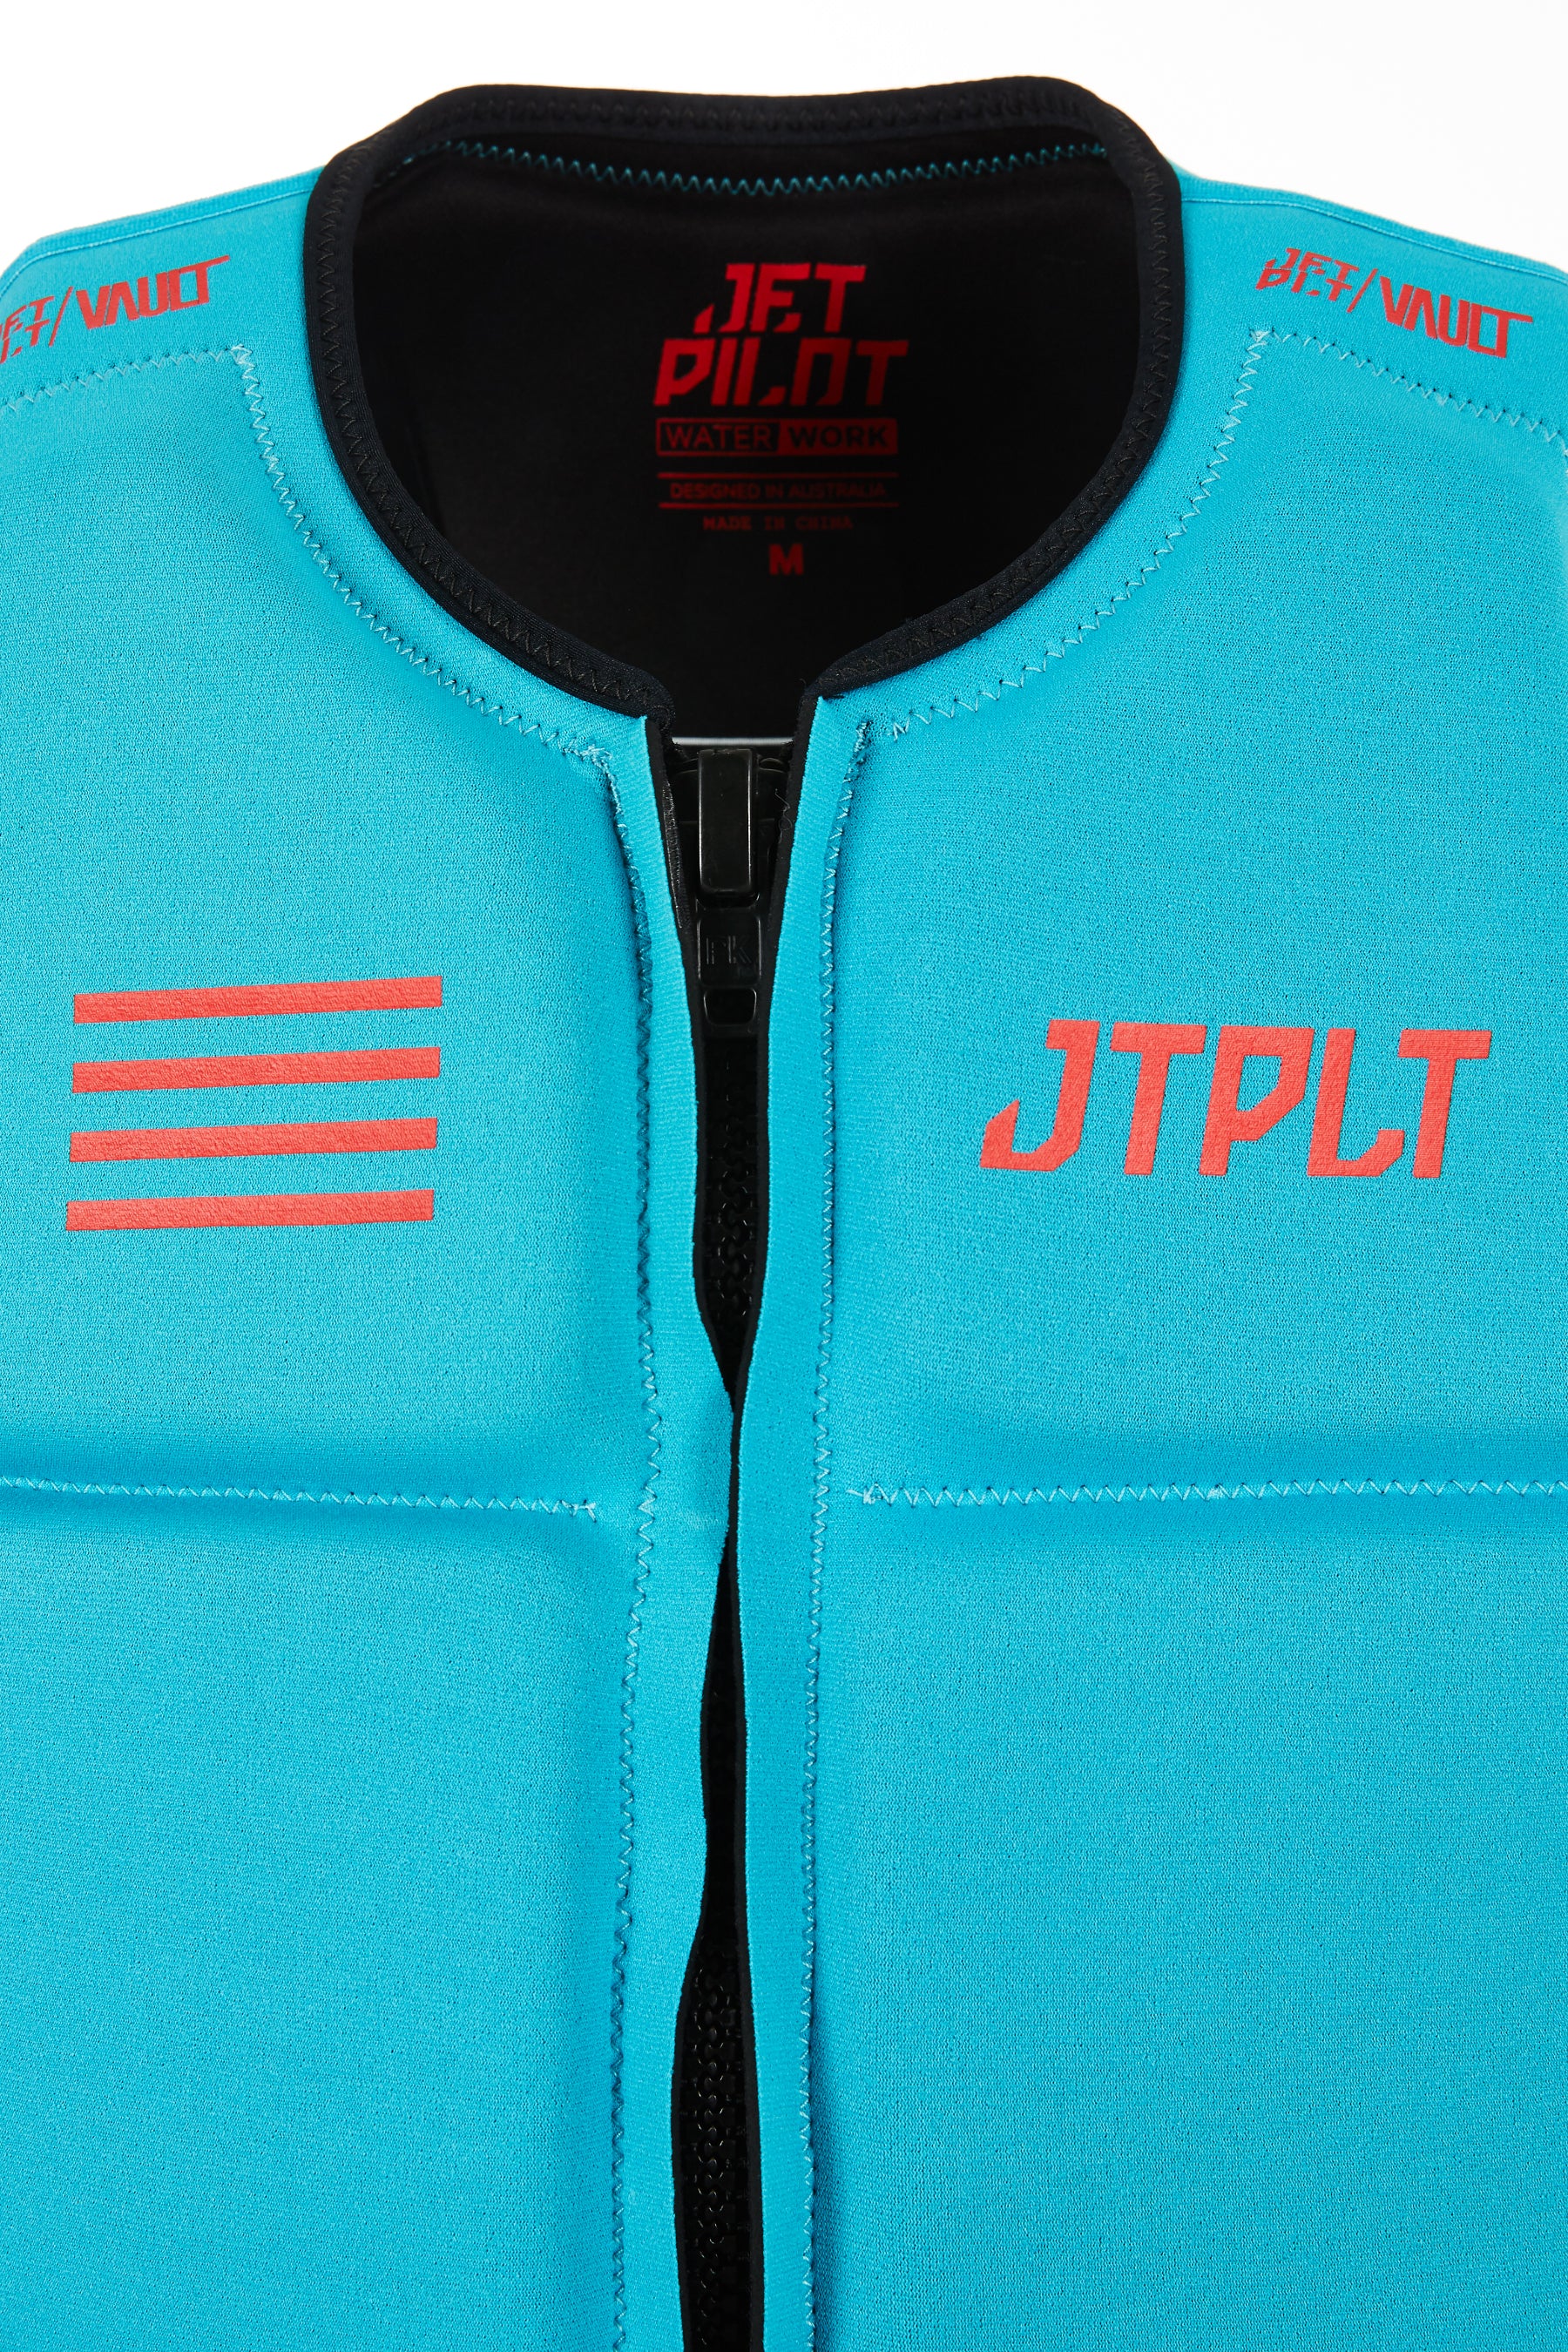 Jetpilot Rx Vault Mens F/E Neo Life Jacket - Blue